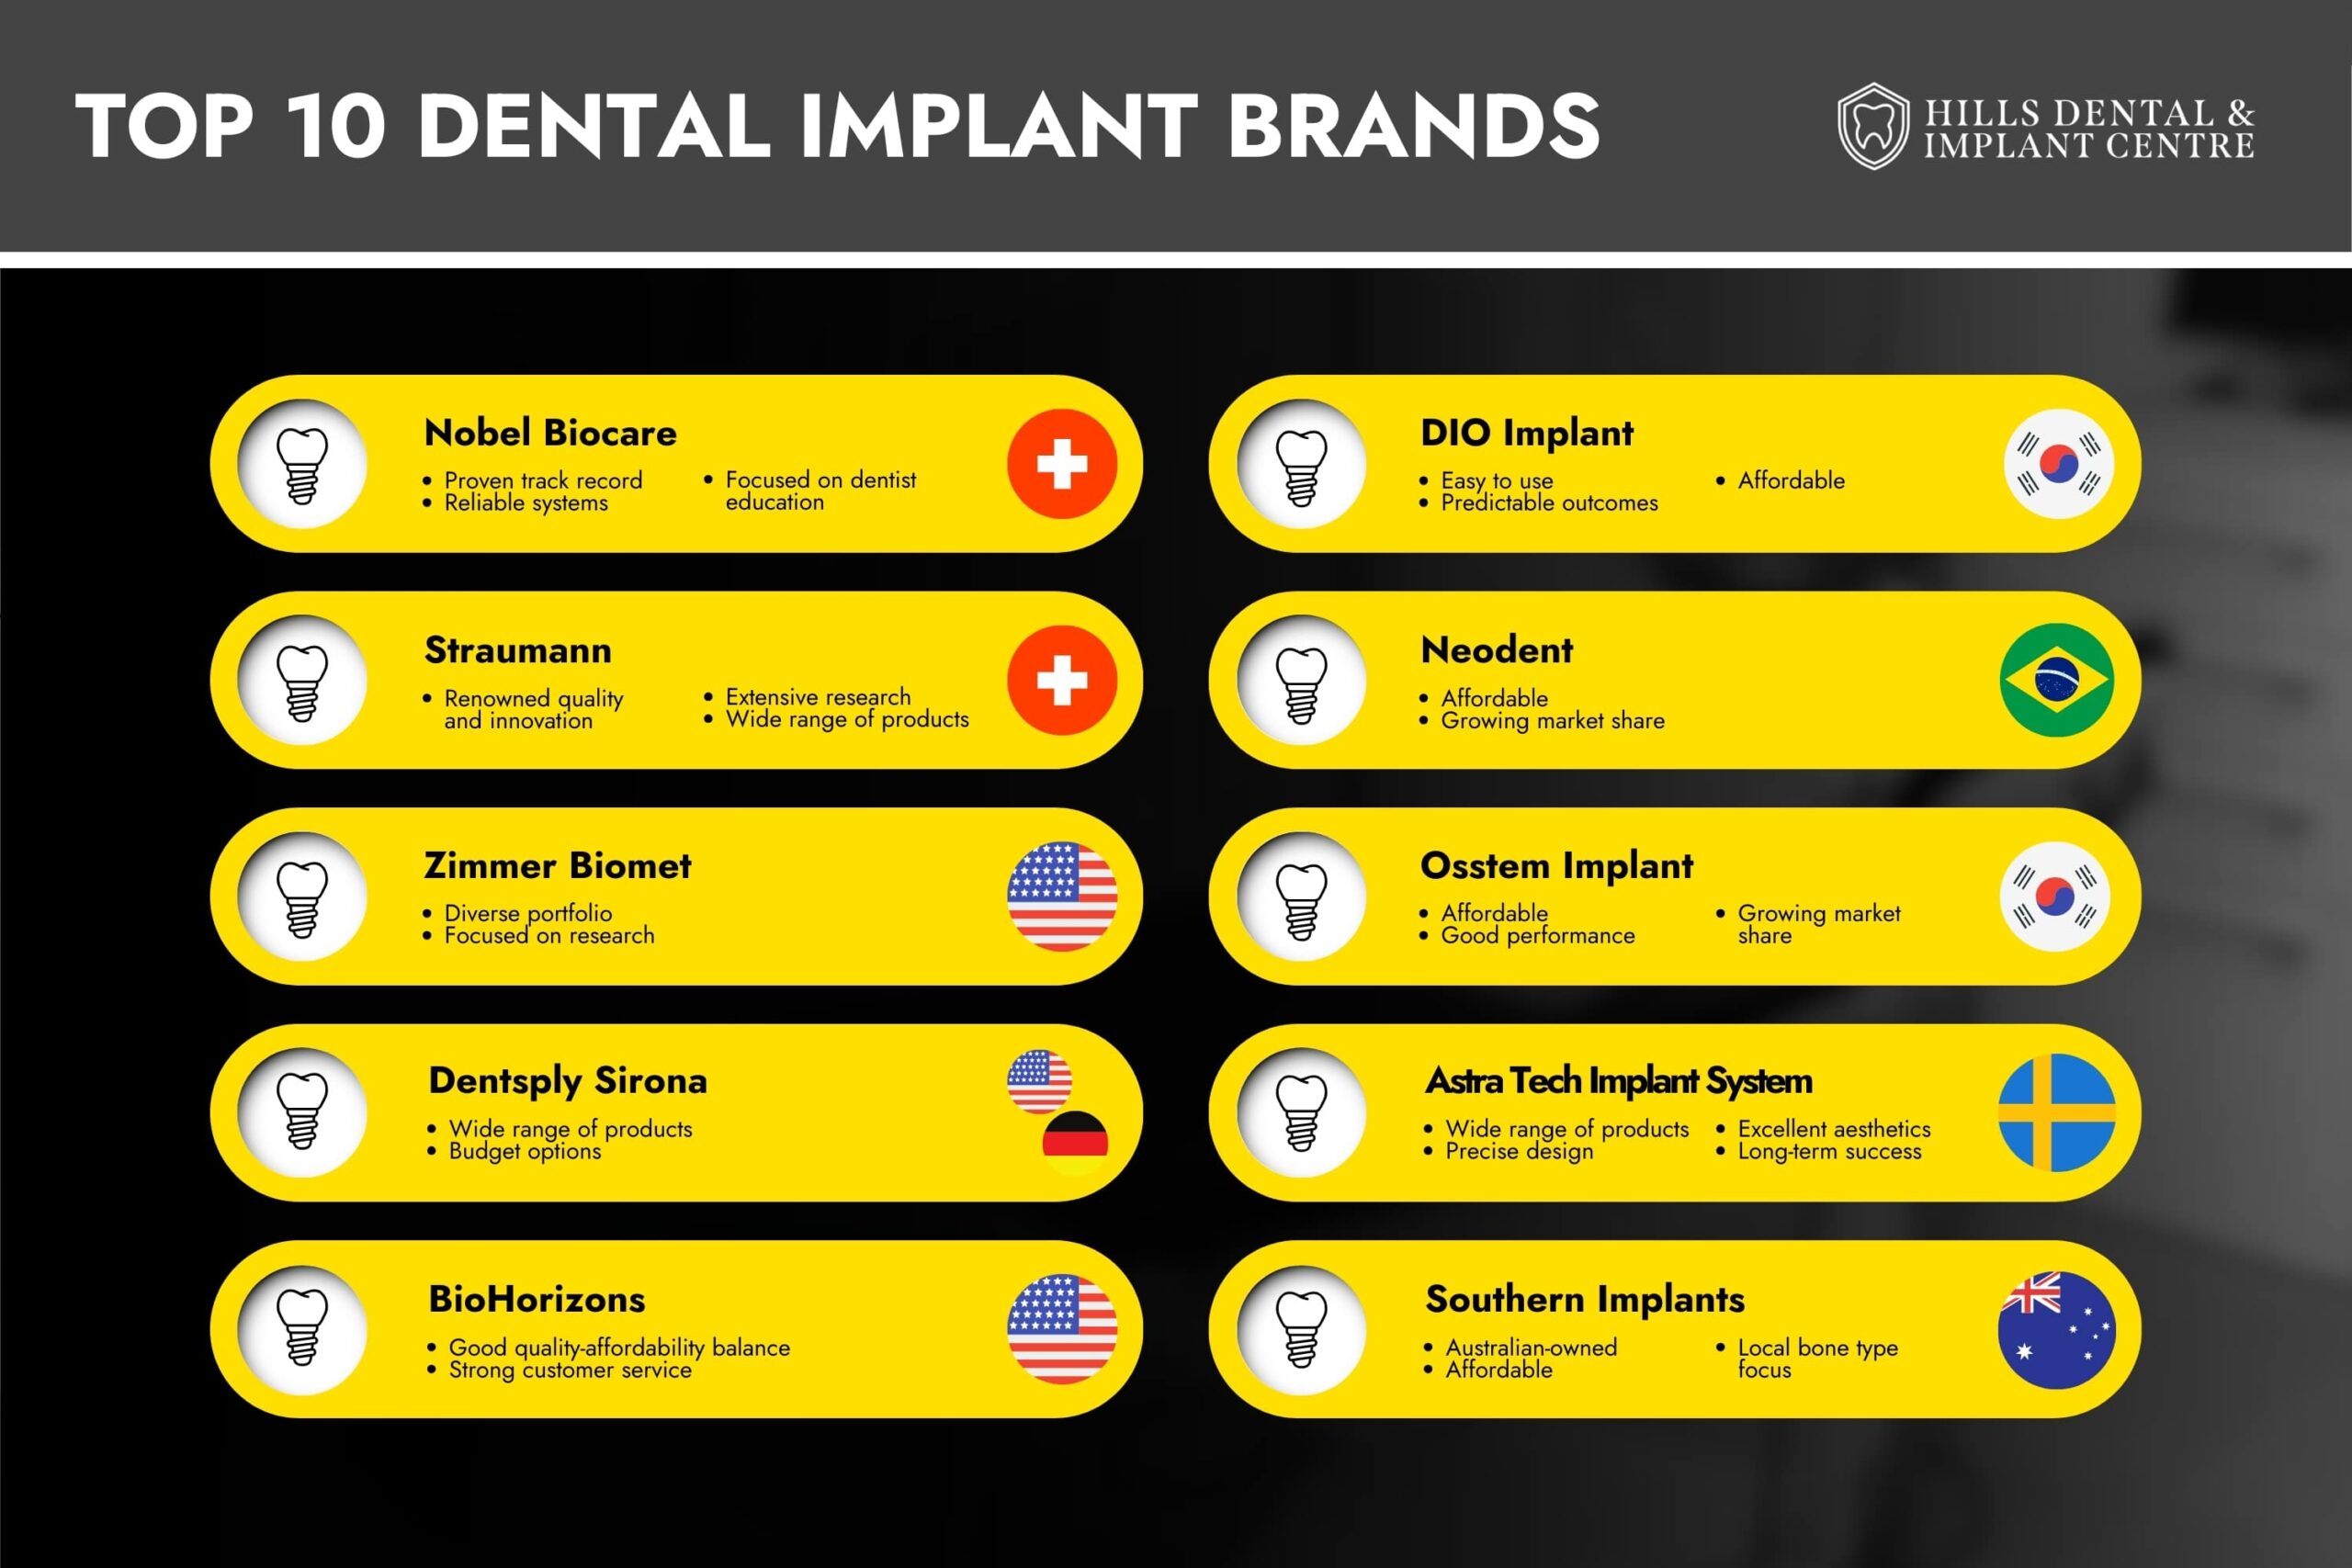 Top Castle Hill Dental Implant Brands